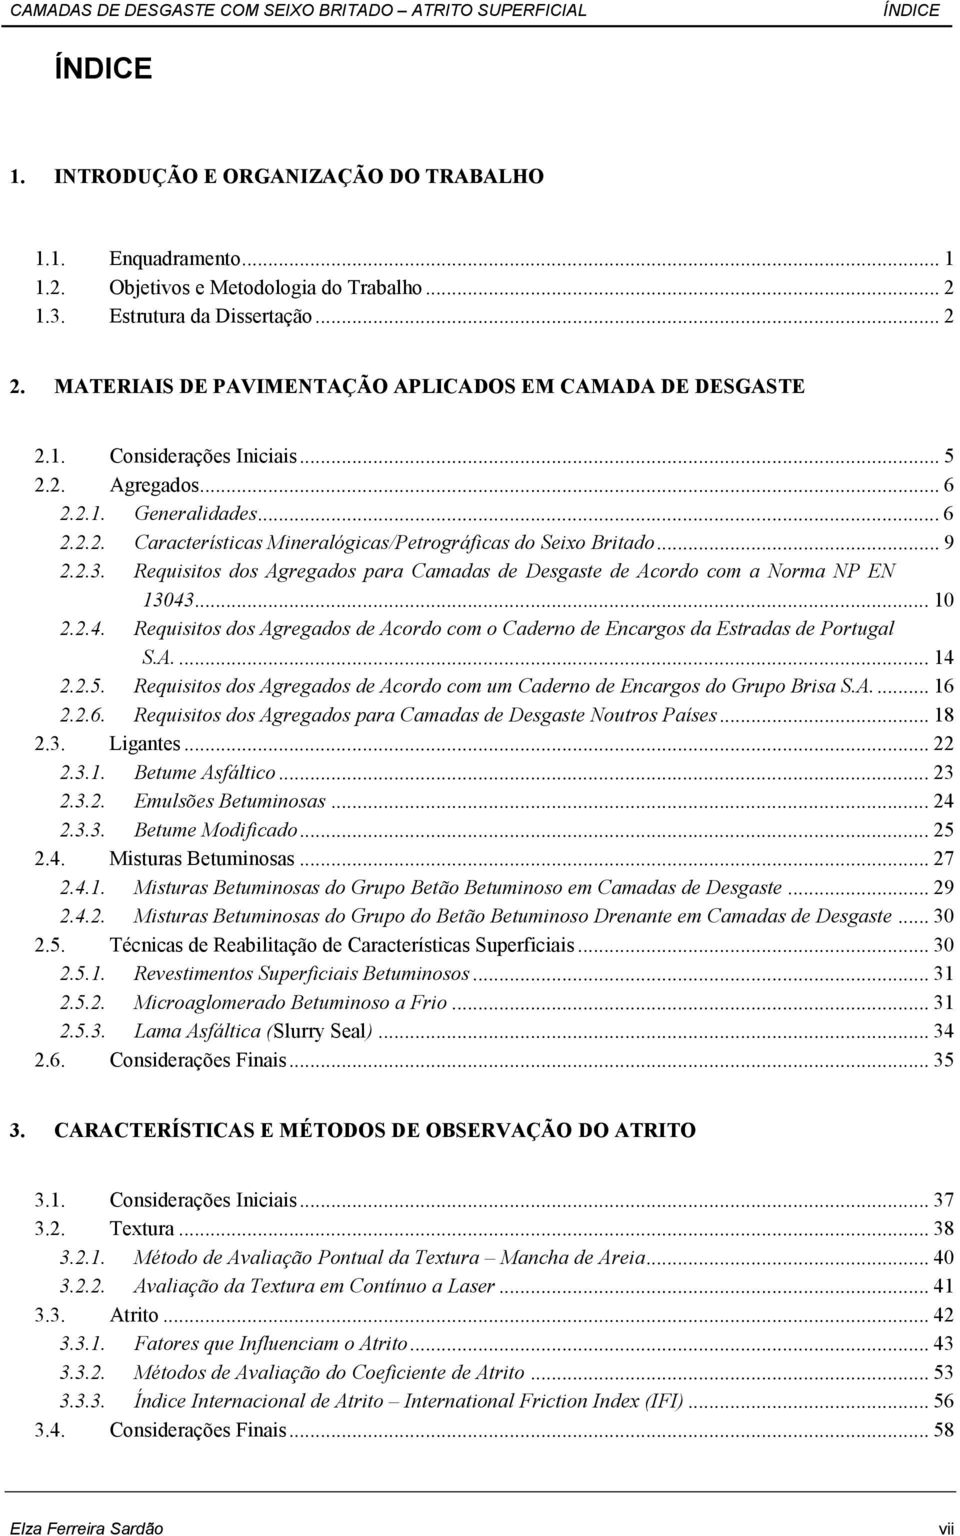 .. 9 2.2.3. Requisitos dos Agregados para Camadas de Desgaste de Acordo com a Norma NP EN 13043... 10 2.2.4. Requisitos dos Agregados de Acordo com o Caderno de Encargos da Estradas de Portugal S.A.... 14 2.